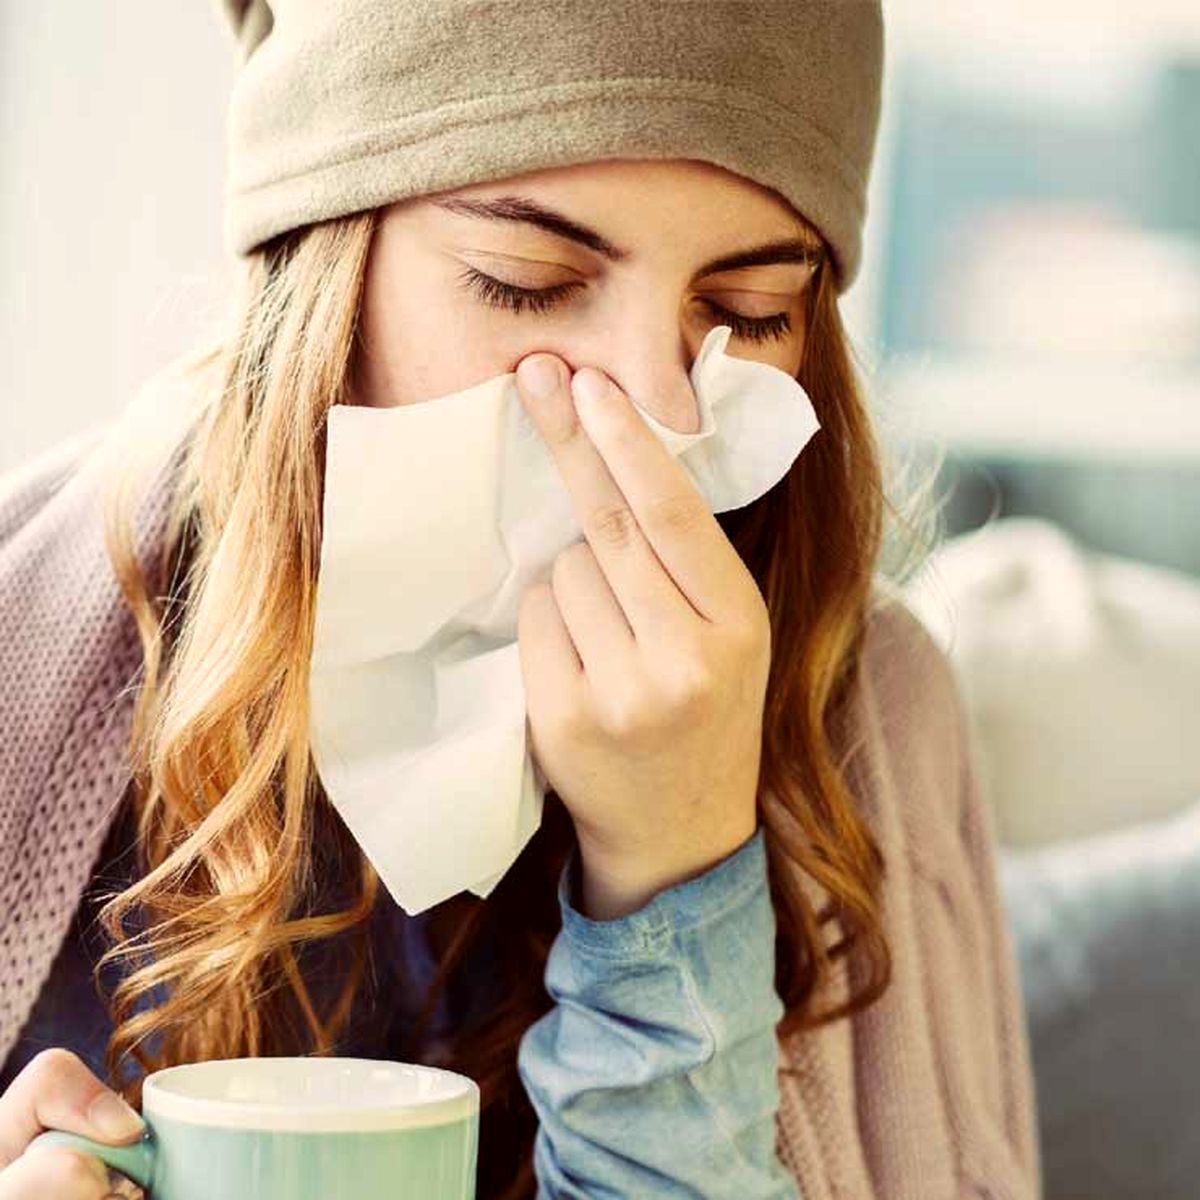 با این روش زیر یه روز سرماخوردگی رو خوب کن! | بهترین ترفند های پزشکی برای درمان سرماخوردگی